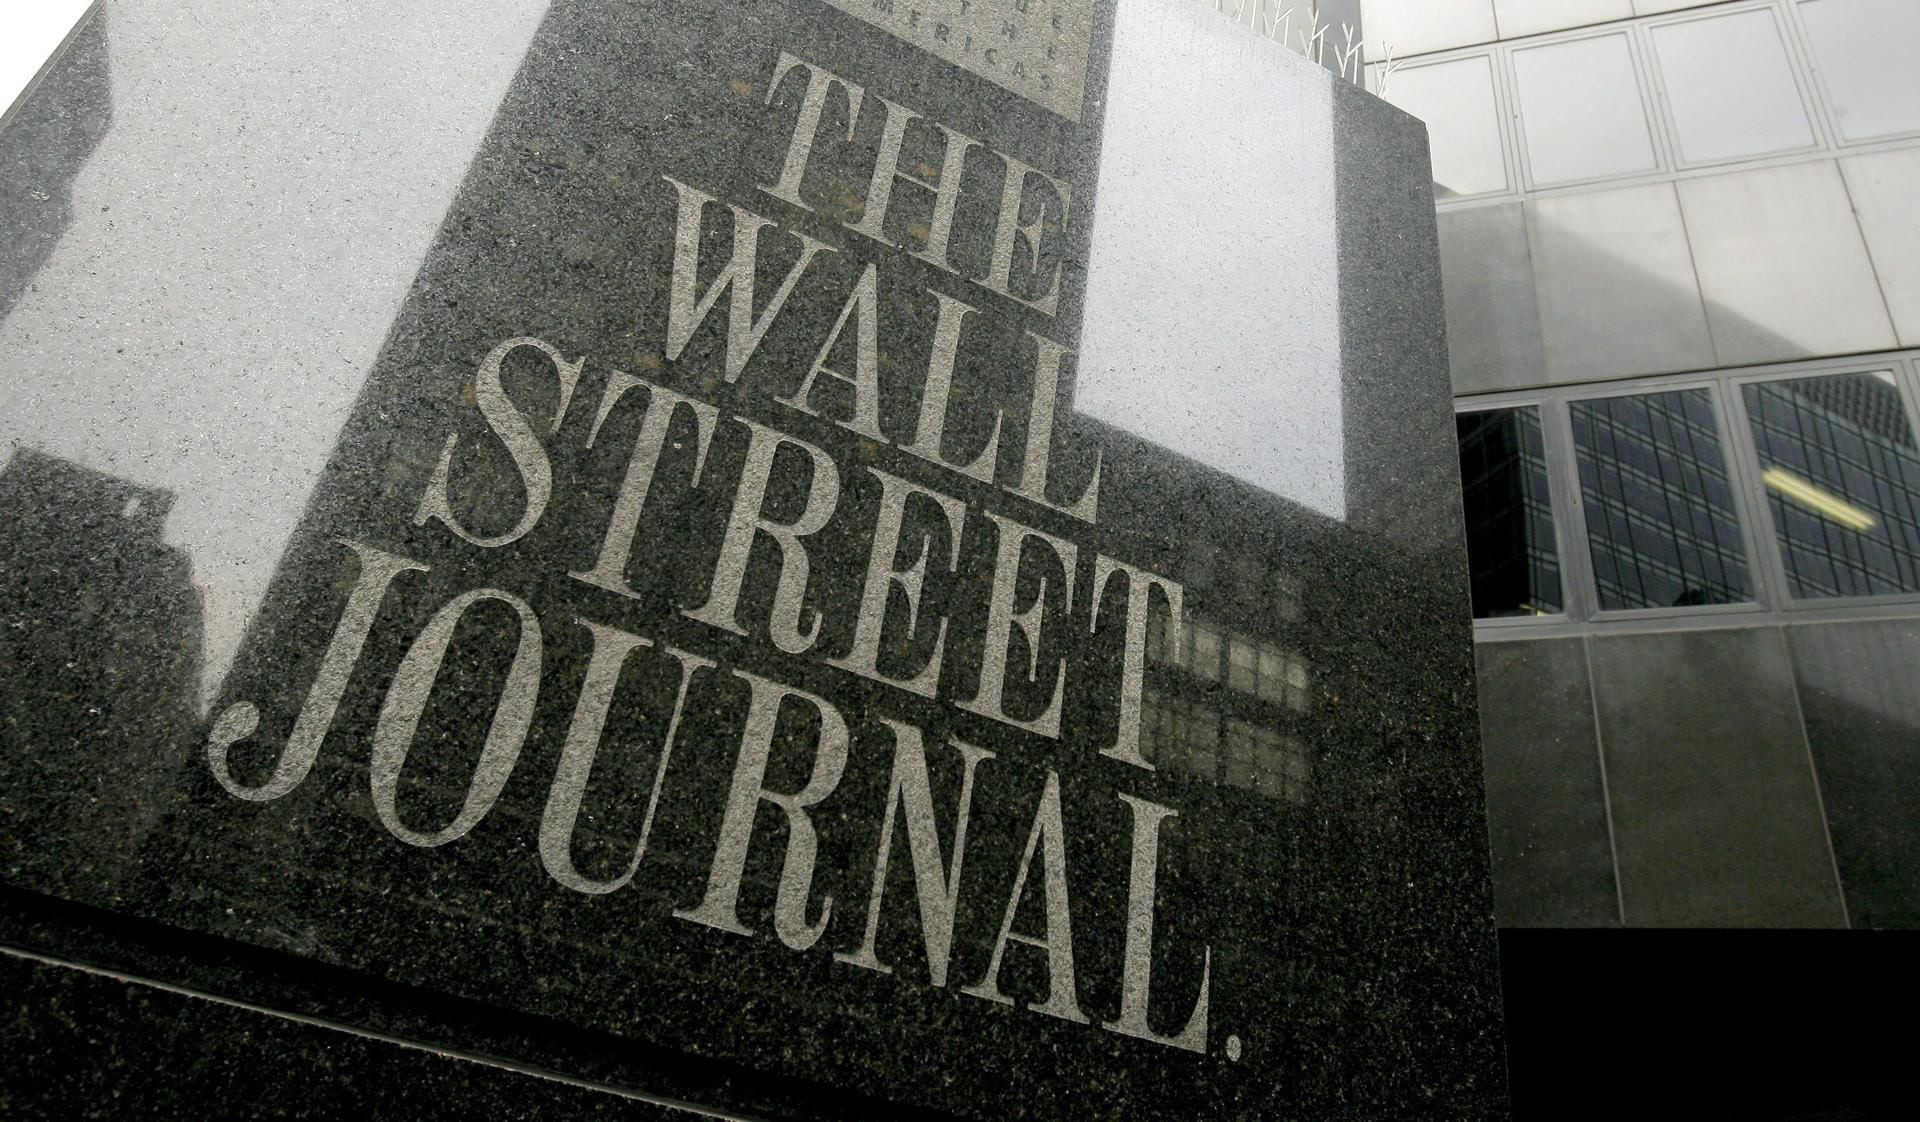 Imagen de archivo de la fachada de las oficinas de "The Wall Street Journal", en Nueva York (EEUU). EFE/Justin Lane
